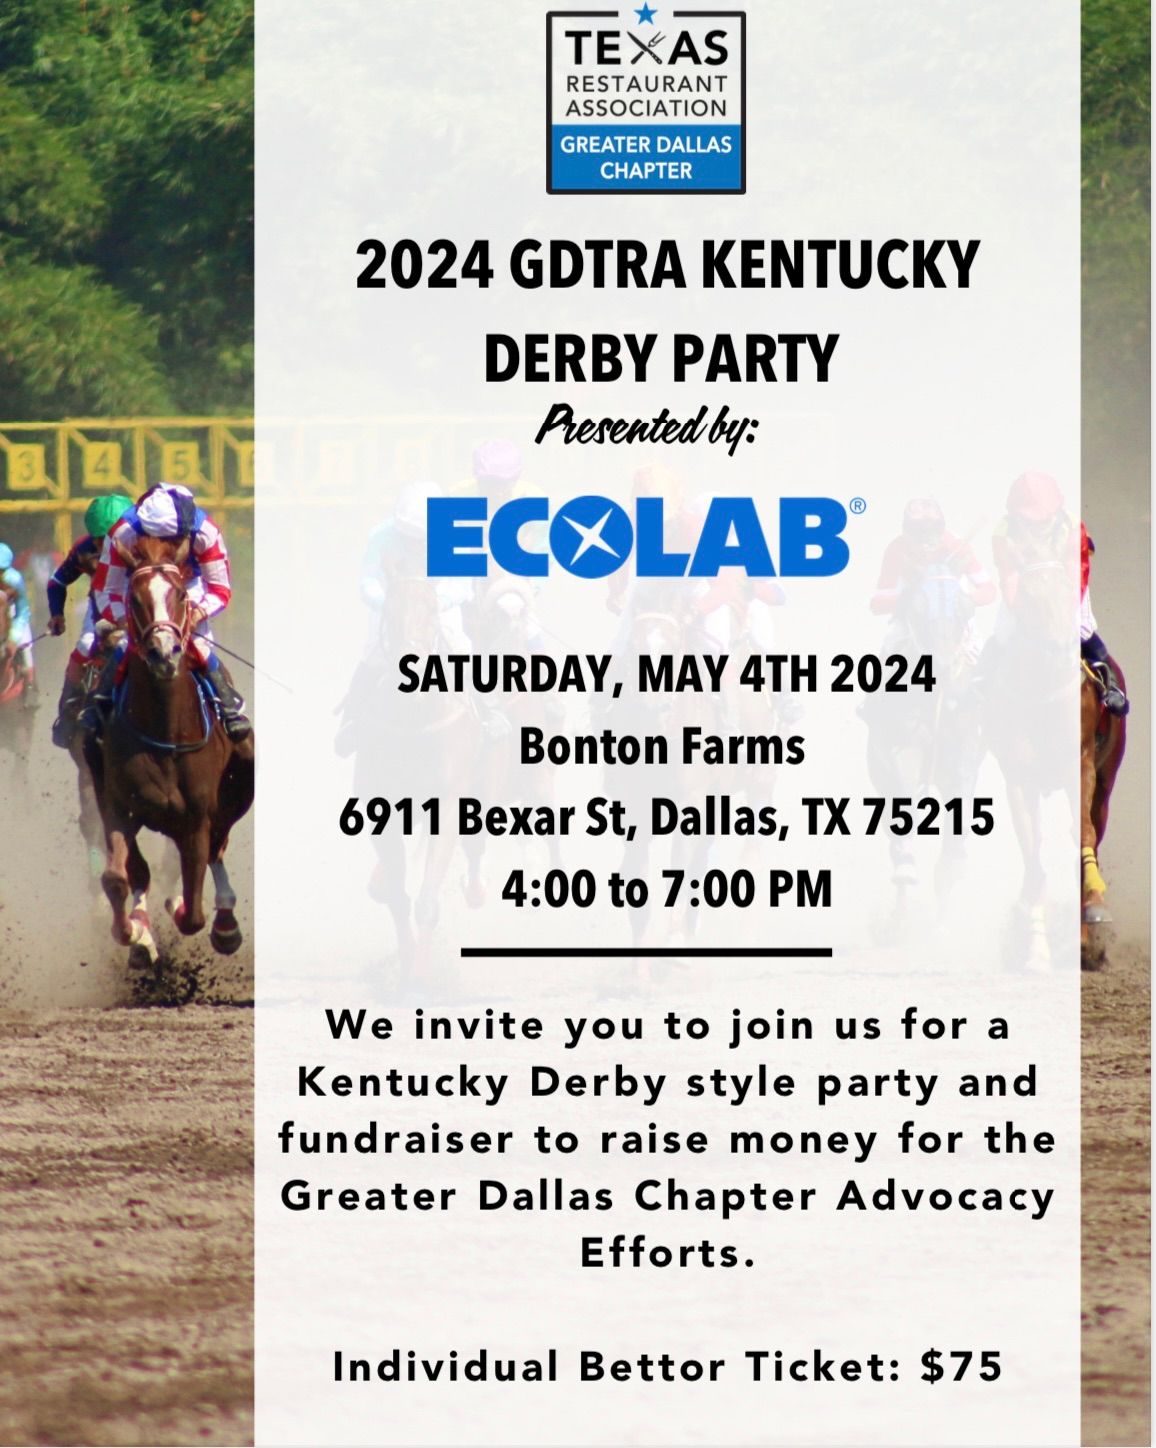 GDTRA Kentucky Derby Fundraiser 